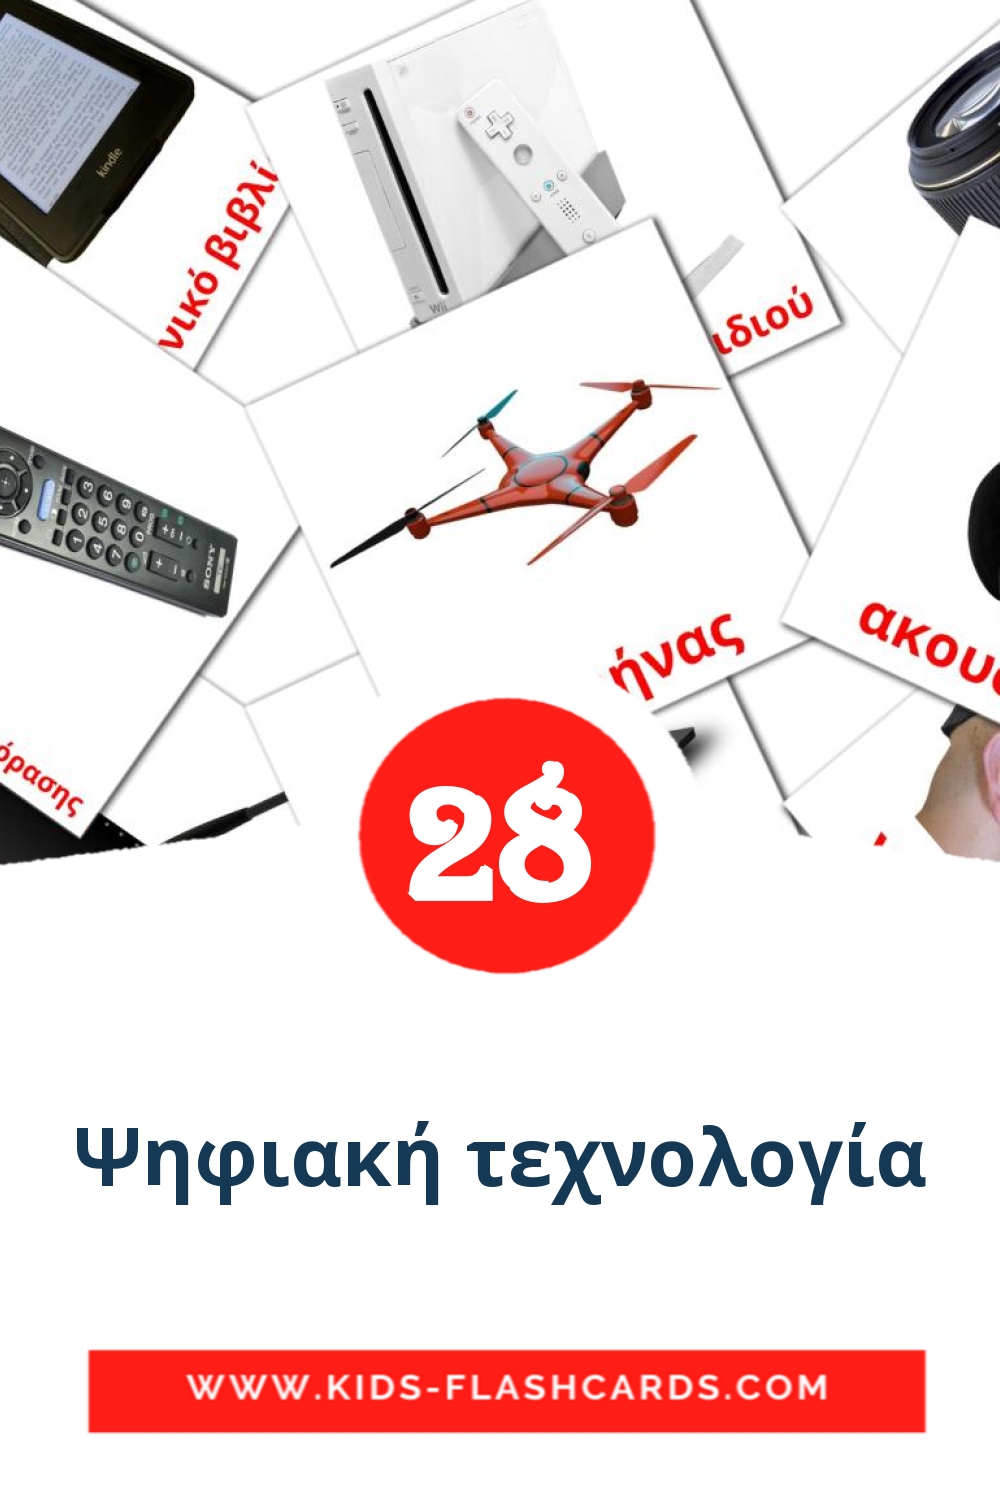 28 tarjetas didacticas de Ψηφιακή τεχνολογία para el jardín de infancia en griego